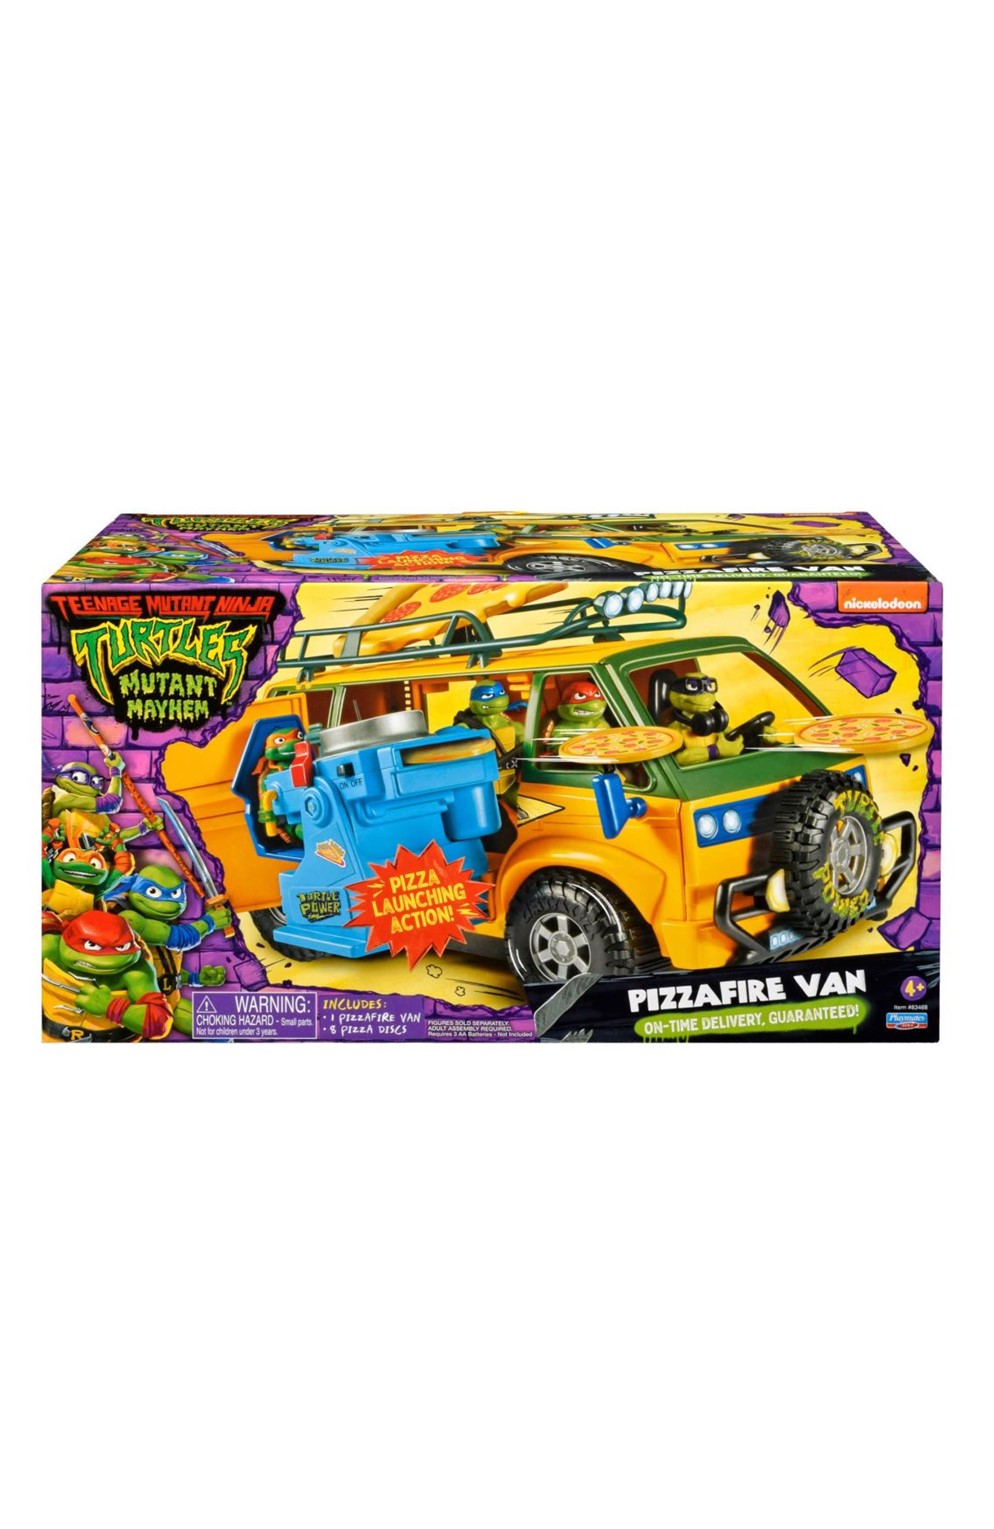 Teenage Mutant Ninja Turtles Mutant Mayhem Pizza Fire Delivery Van Playset